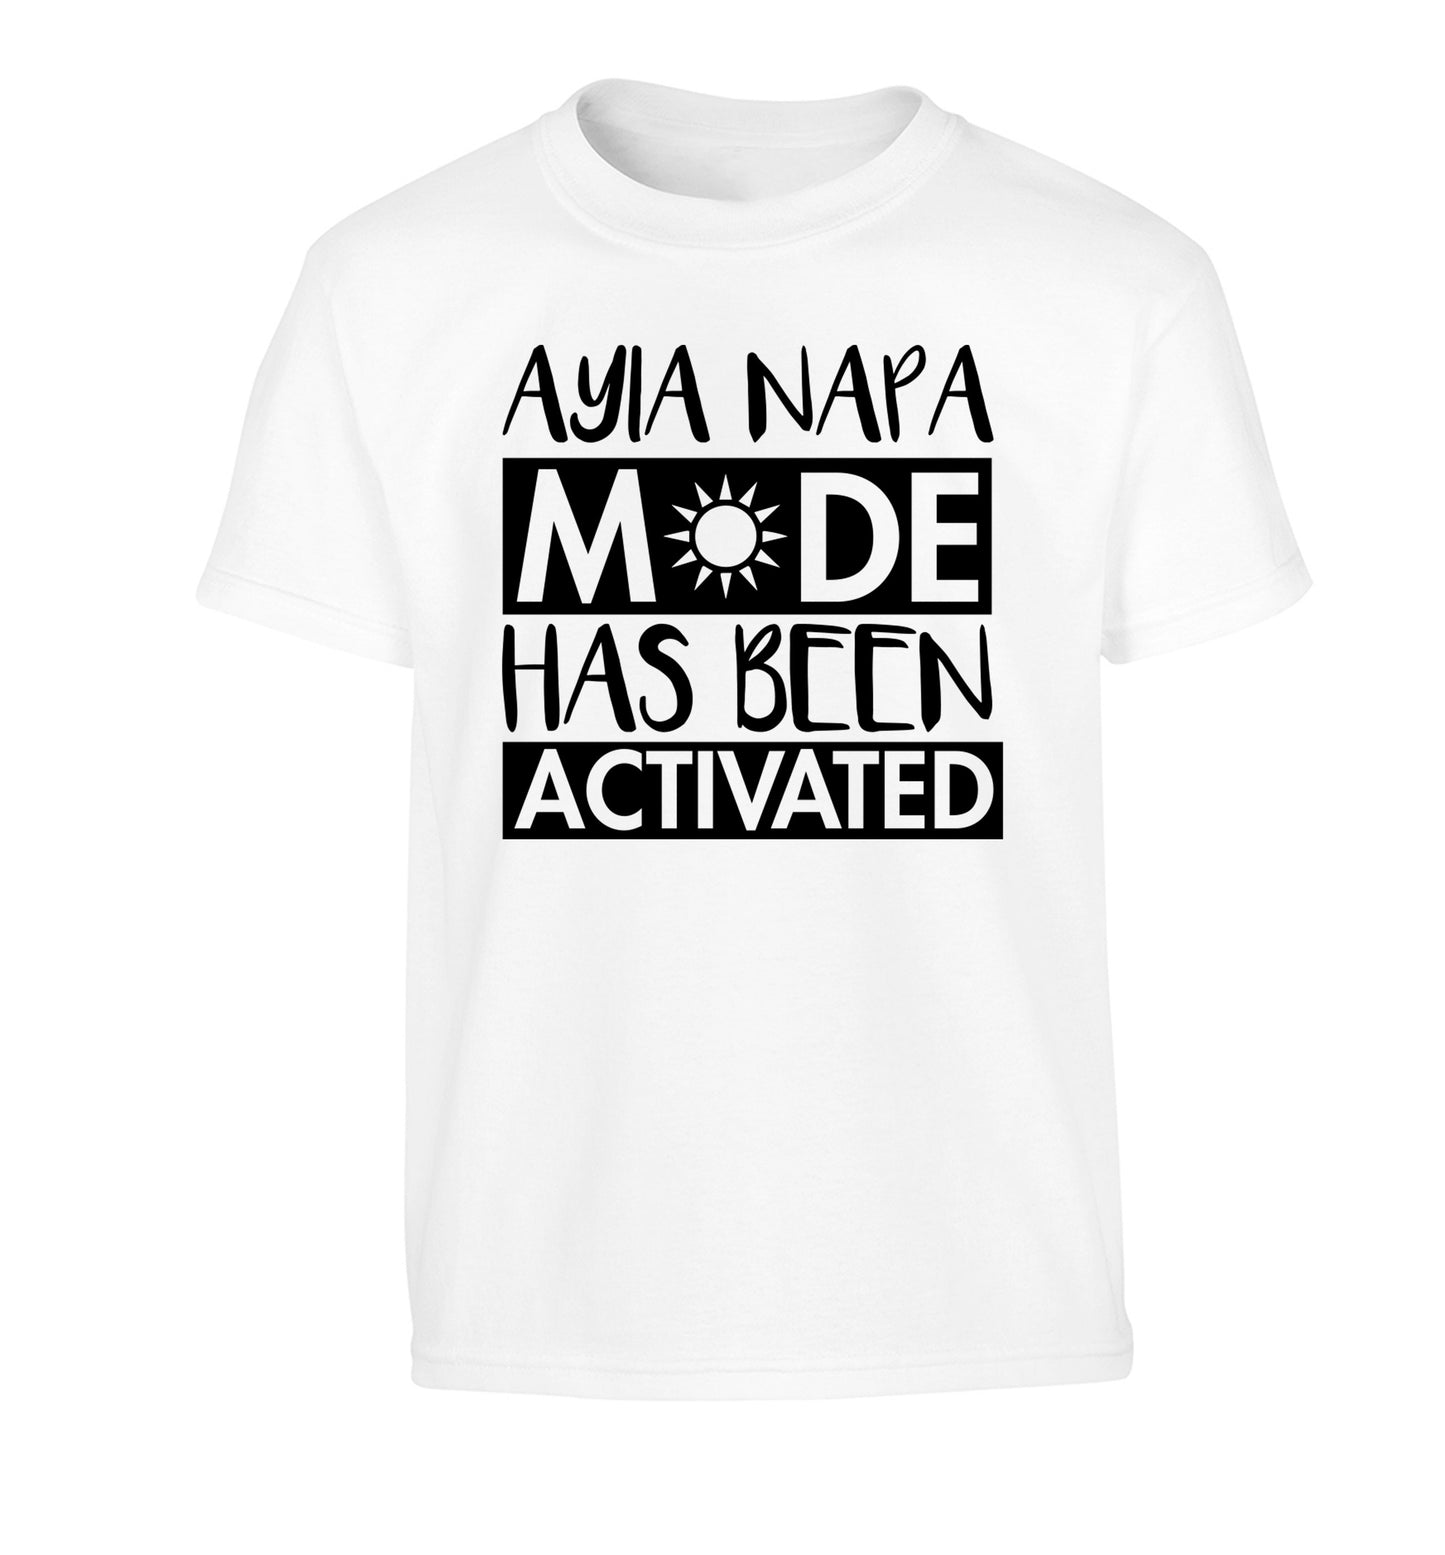 Aiya Napa mode has been activated Children's white Tshirt 12-14 Years